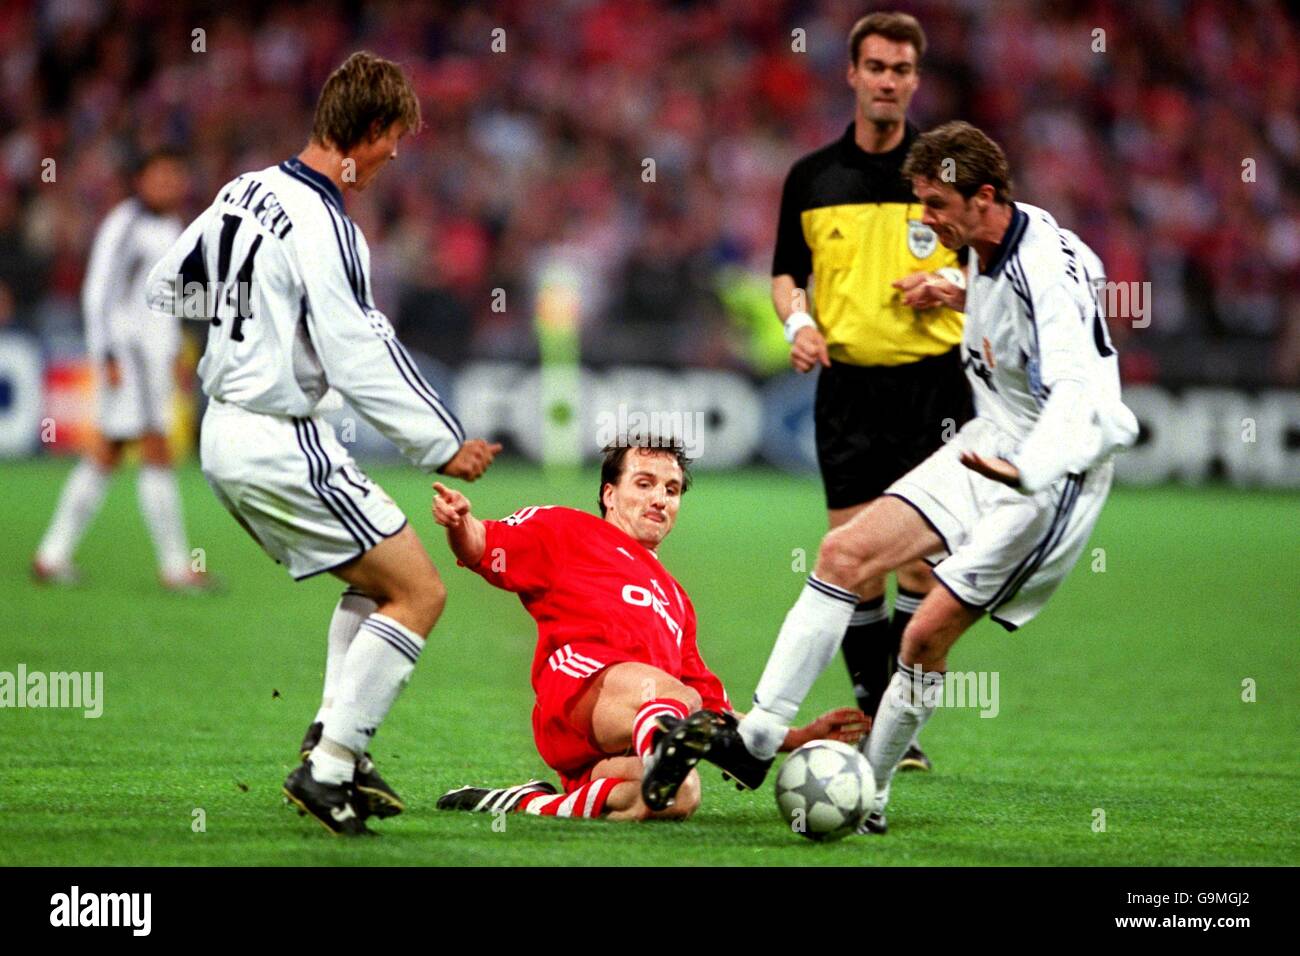 Fußball - UEFA Champions League - Halbfinale - Rückspiel - Bayern München /  Real Madrid. Jens Jeremies (c) von Bayern München wird in Guti (l) und  Steve McManaman (r) von Real Madrid aufgeführt Stockfotografie - Alamy